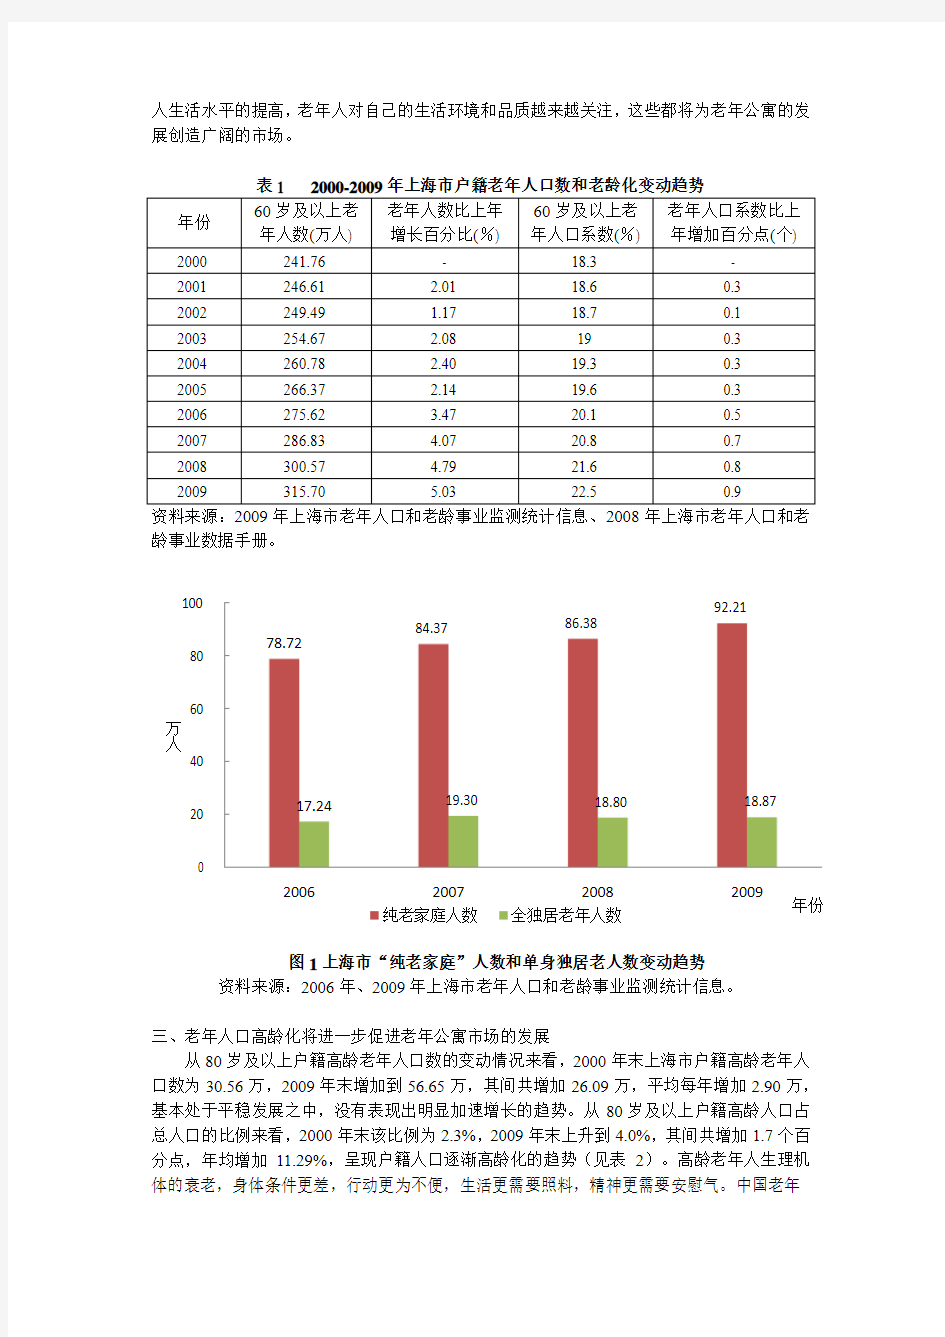 基于上海市人口老龄化趋势的老年公寓市场分析